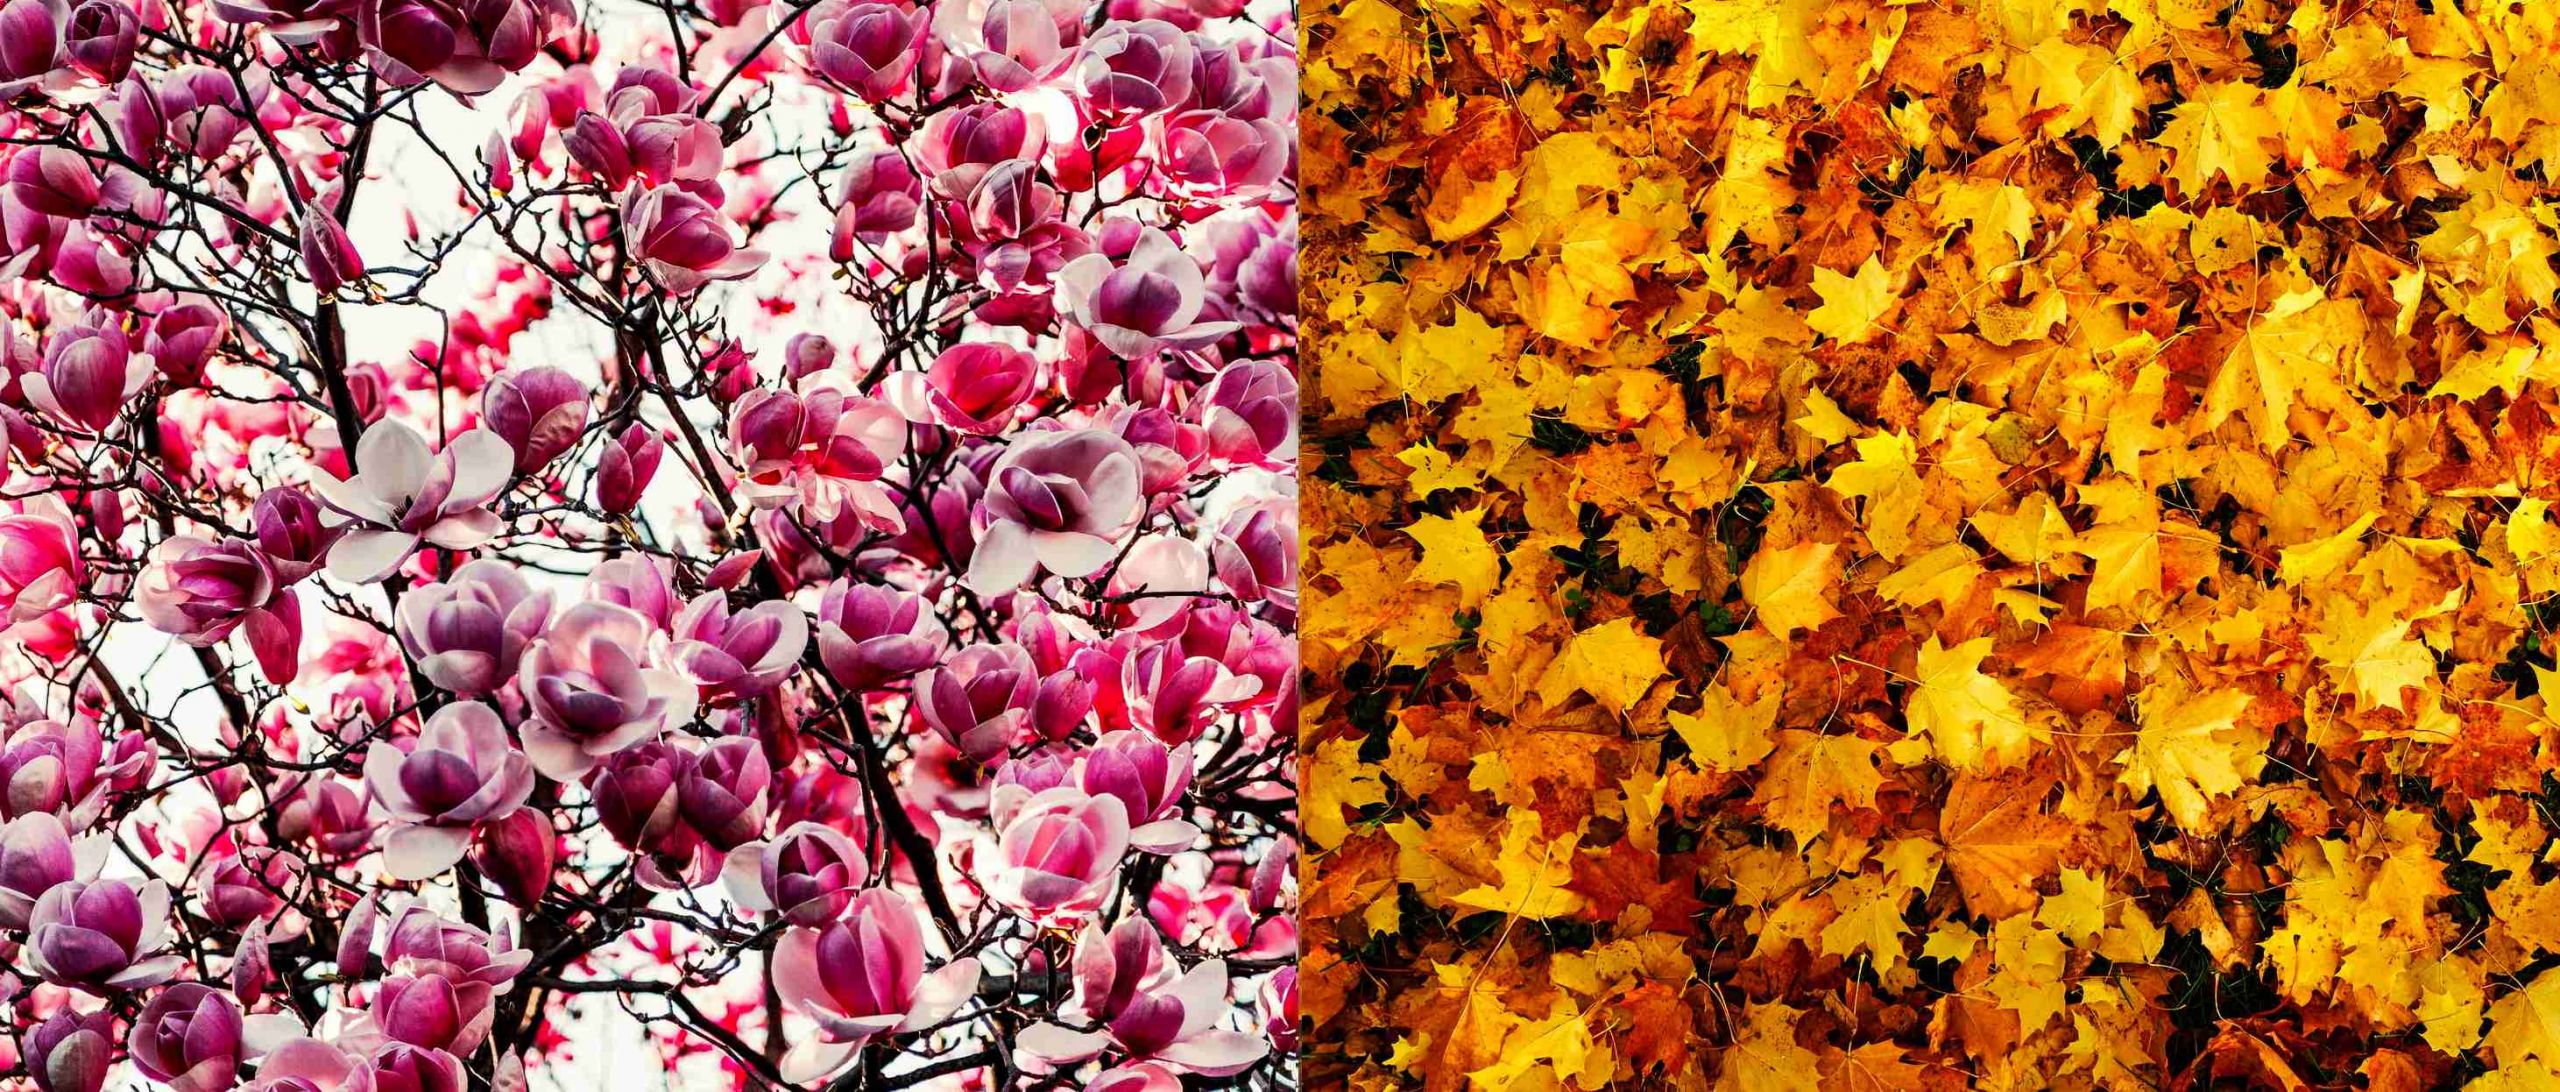 jar-magnolia-kvety-strom-jesen-opadane-listie-pexels-edit-of-free-download-756903-2033985.jpg